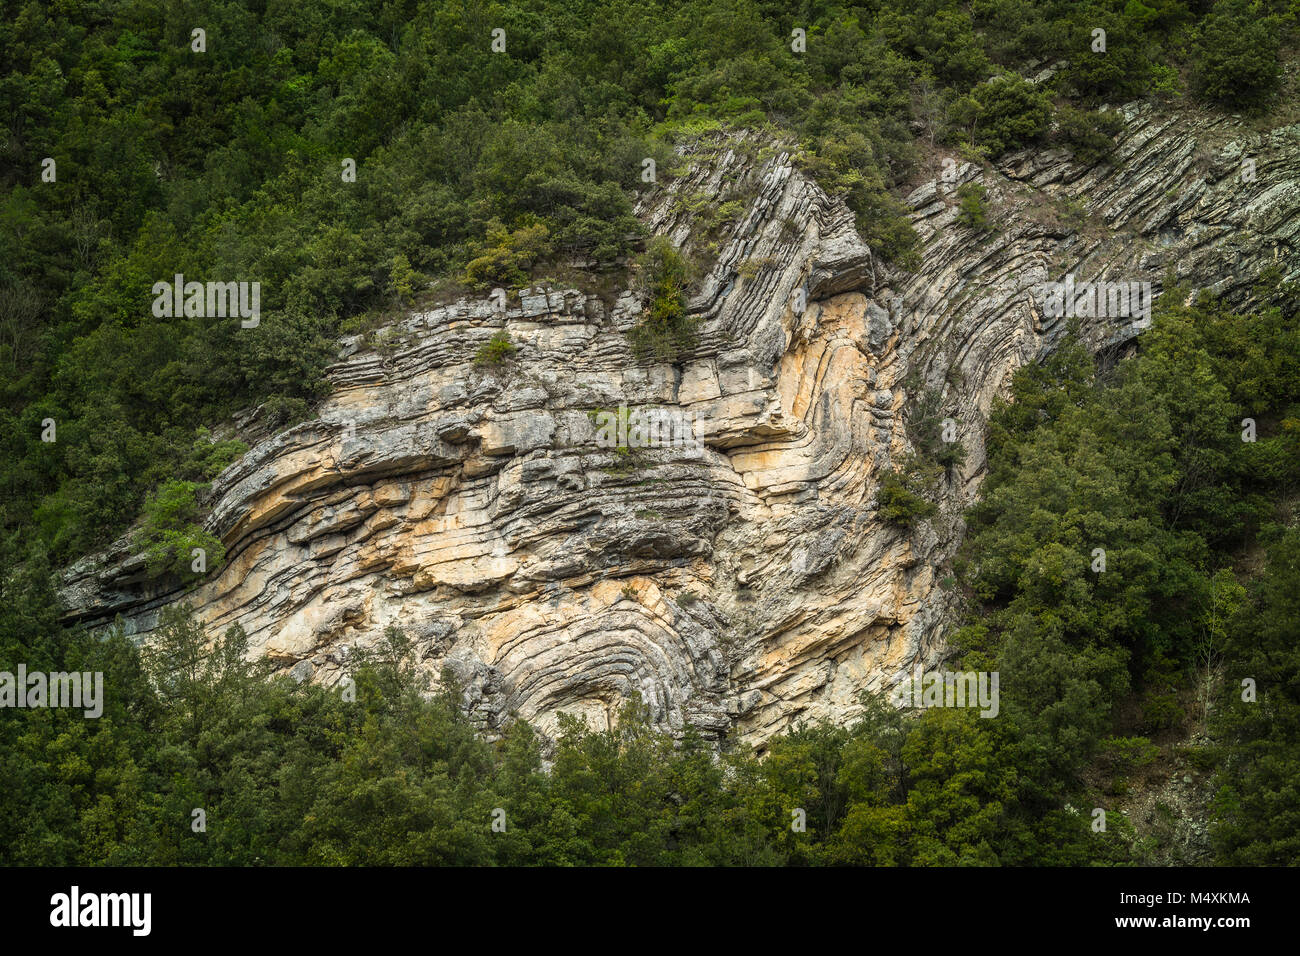 capas de sedimentos de arenisca deformadas por fuerzas geológicas. Parque Nacional Gran Sasso y Monti della Laga, Abruzzo, Italia, Europa Foto de stock